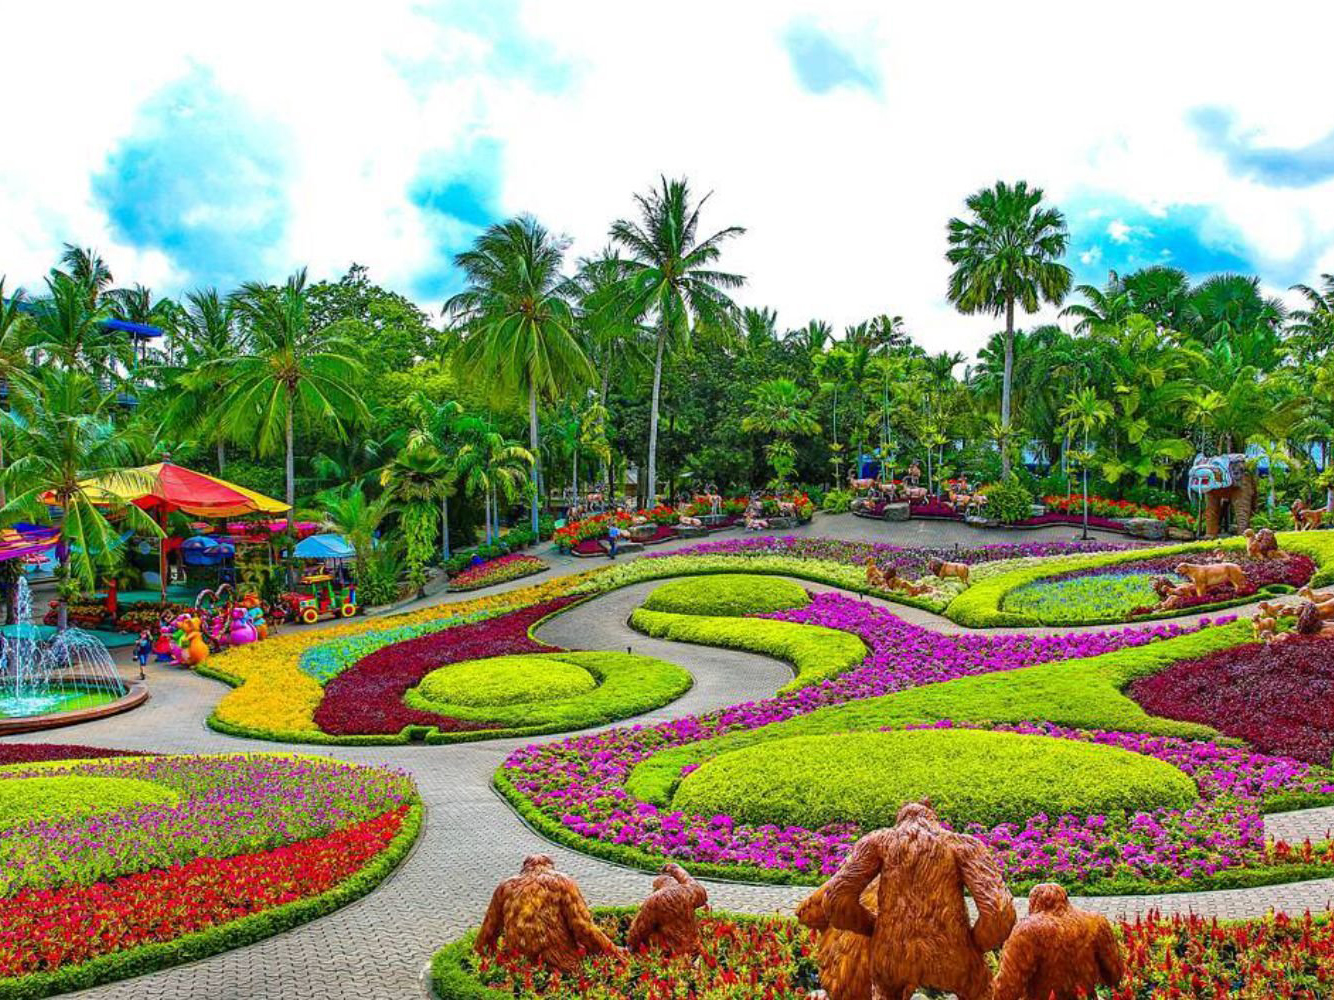 winter gardens around the world - Nong Nooch Tropical Botanical Garden, Thailand